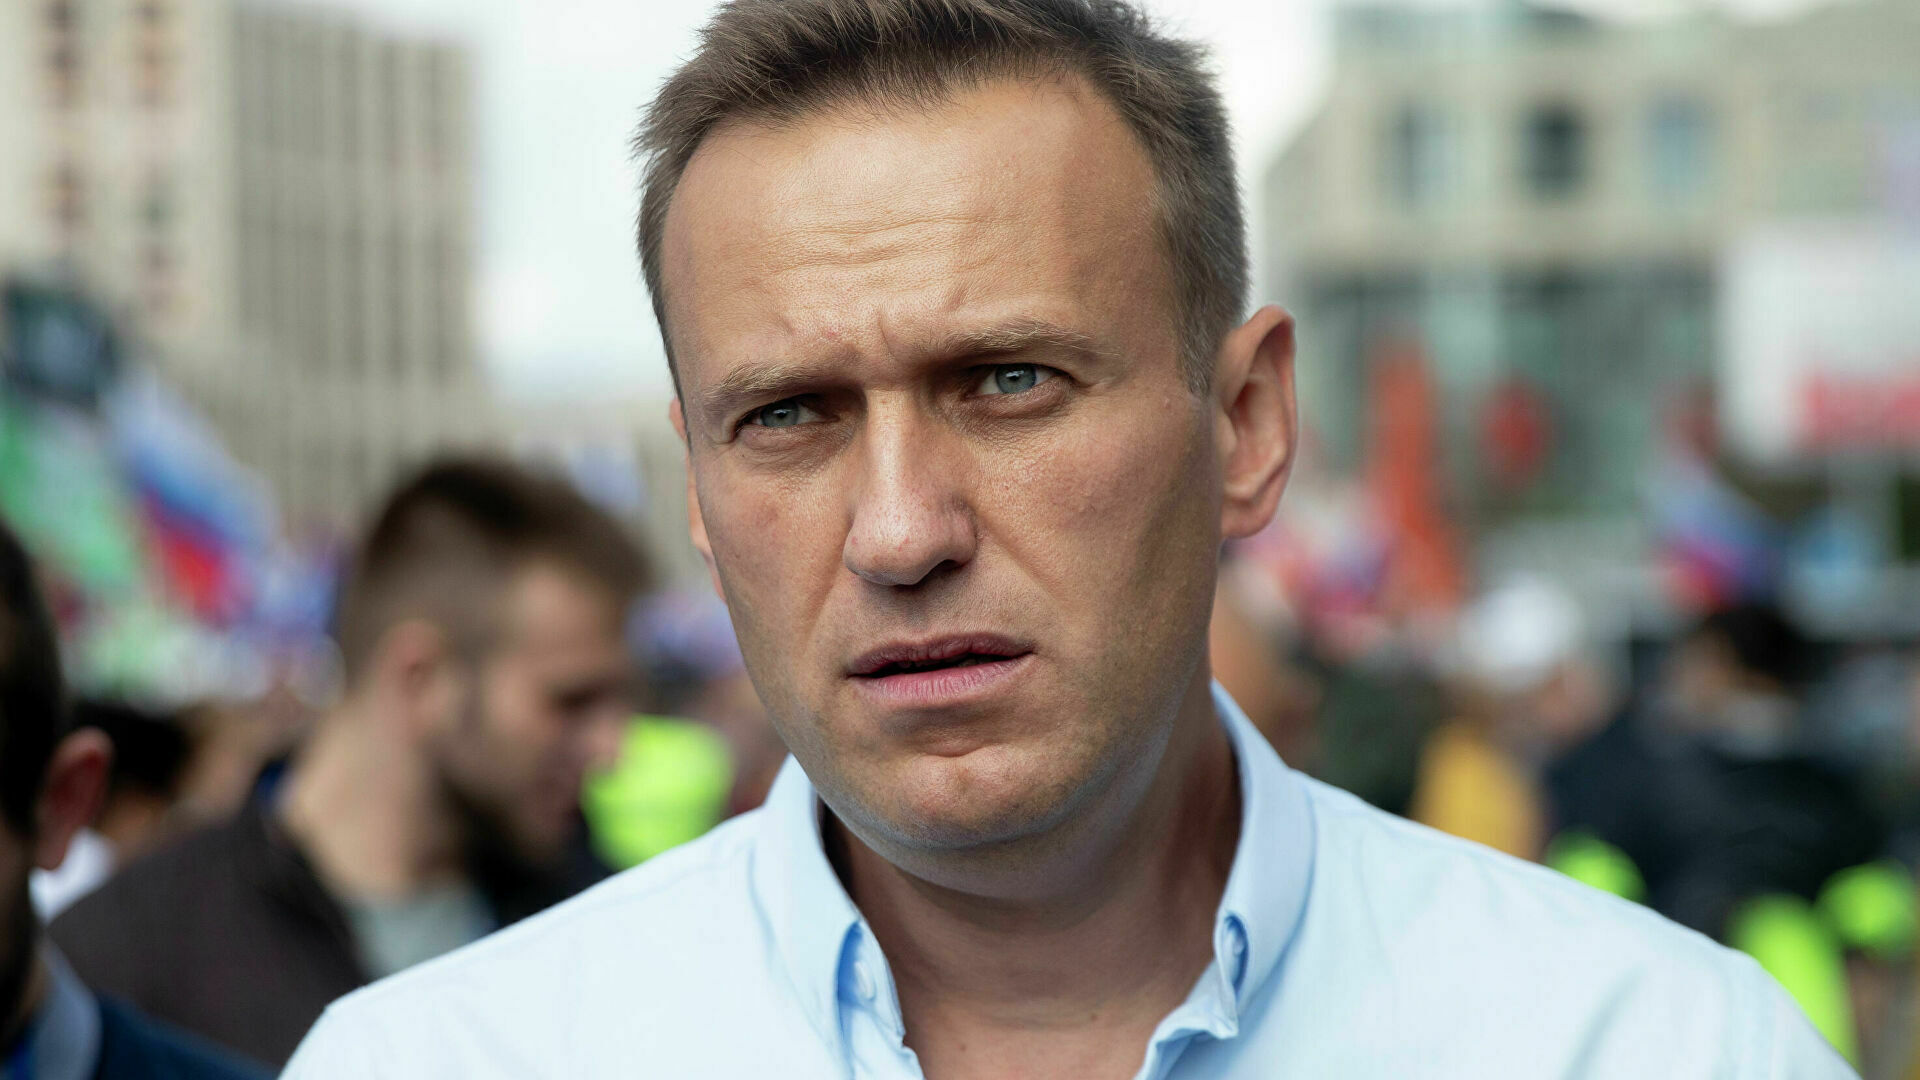 Силовики проверят апрельское выступление Навального на «Эхе Москвы» на экстремизм